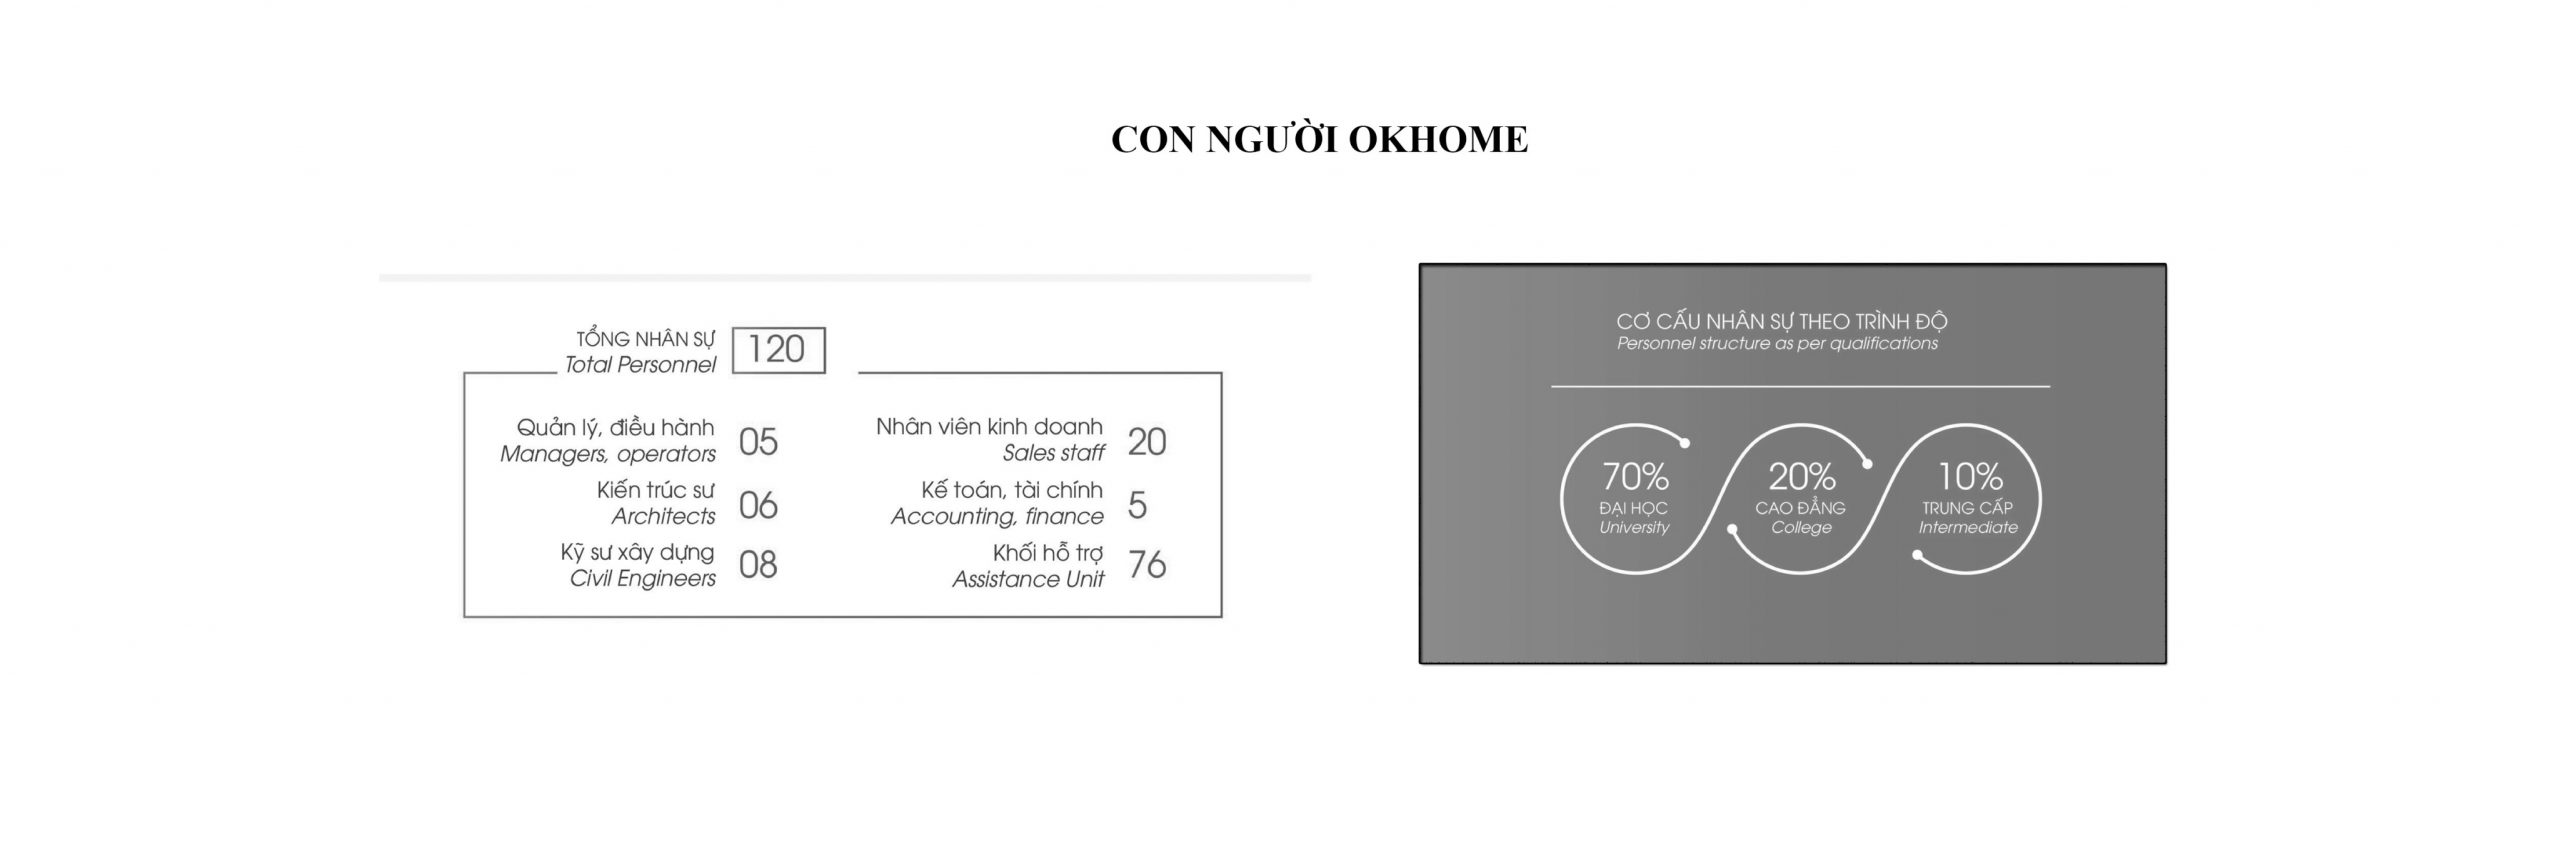 con-nguoi-okhome2